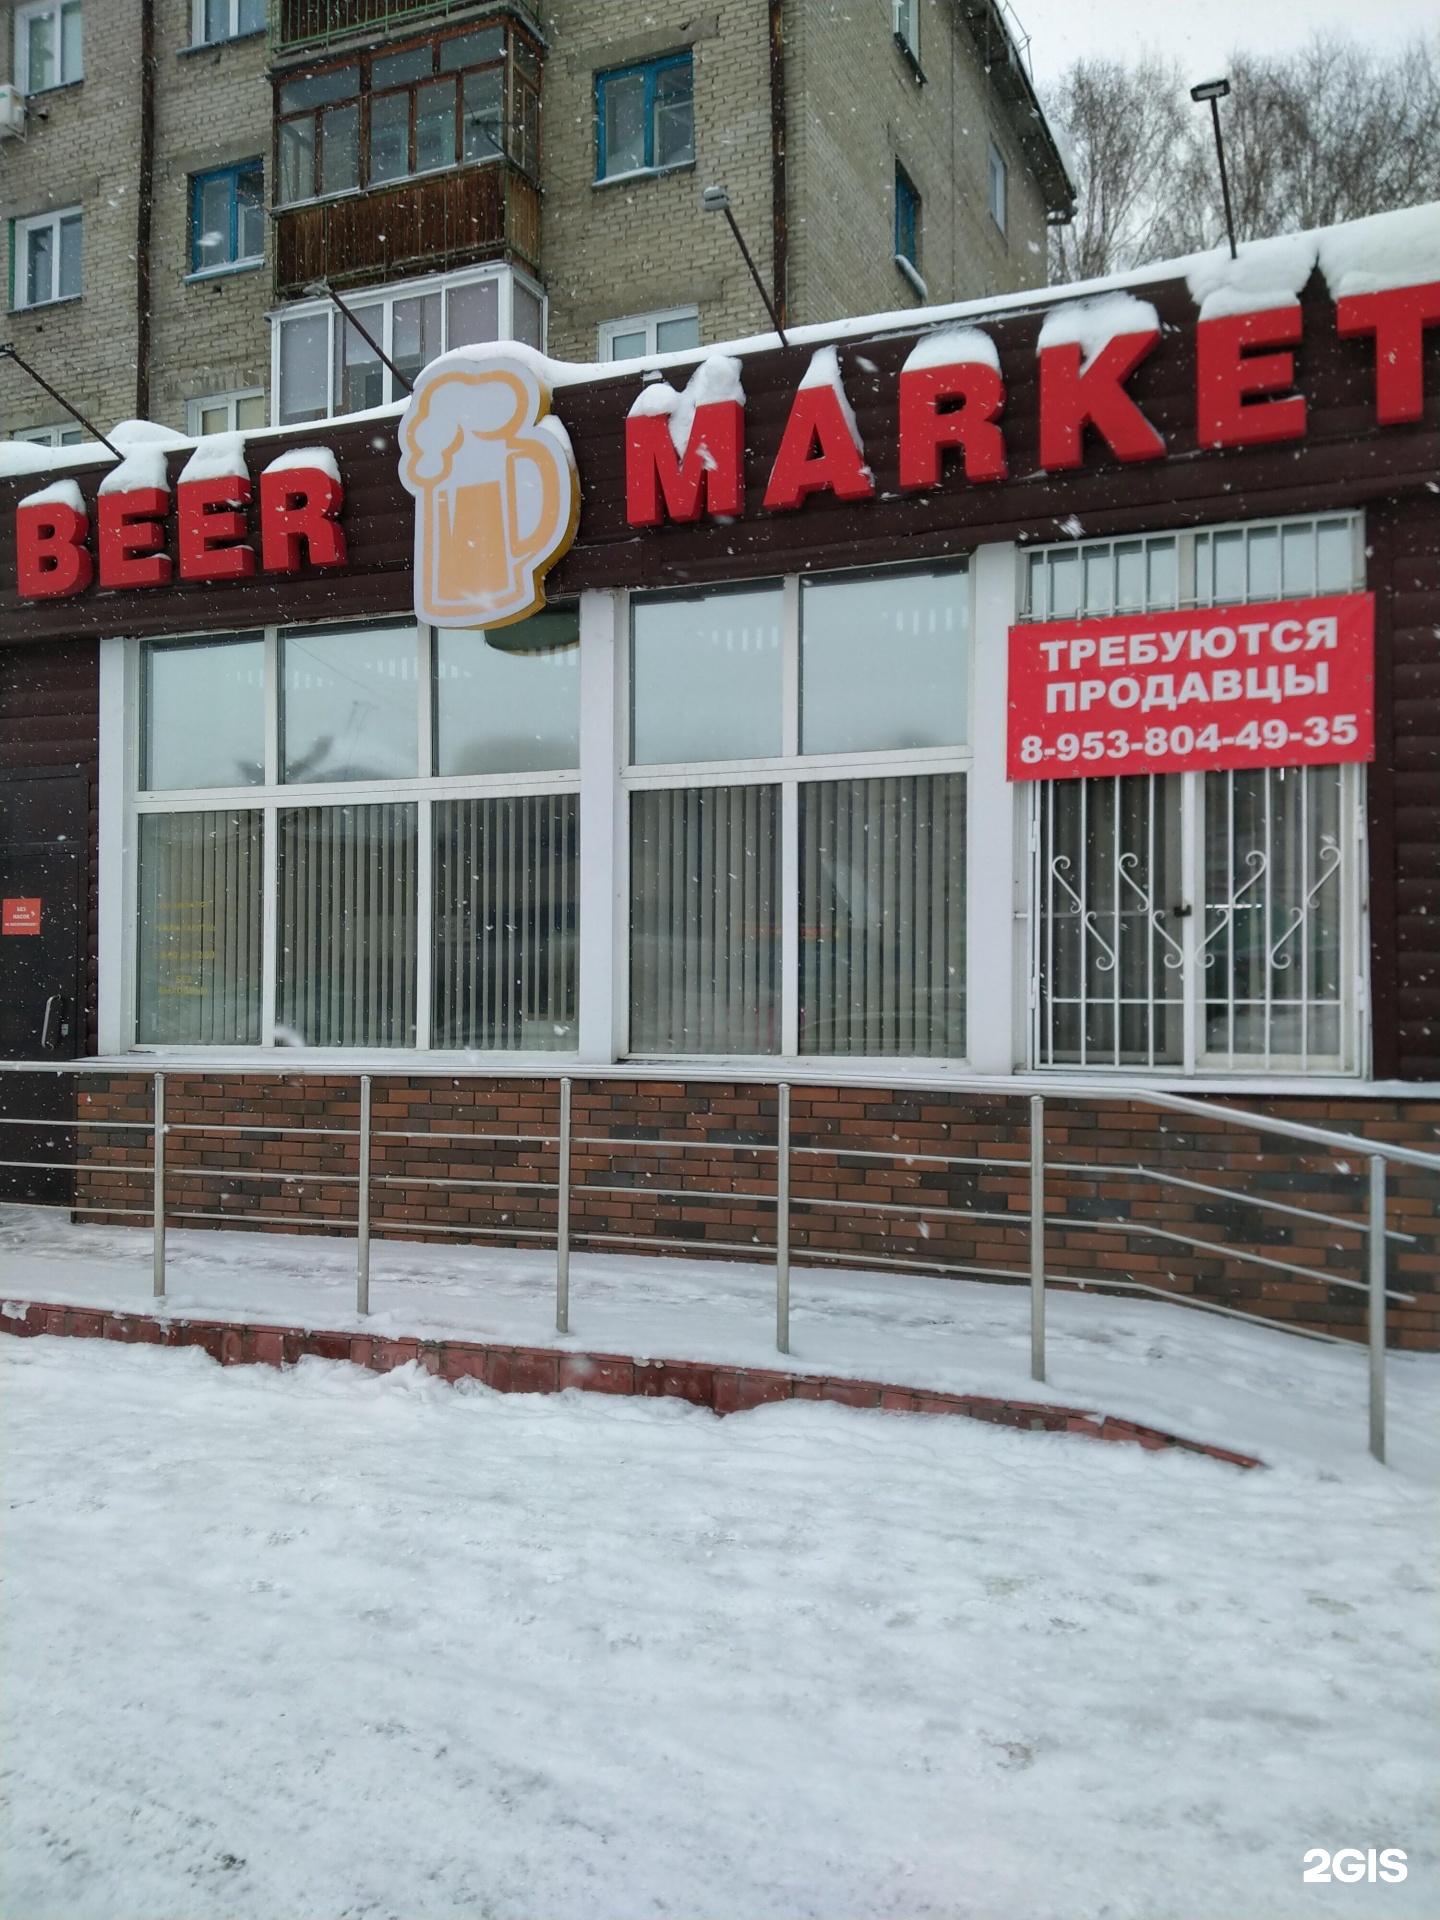 Круглосуточное пиво новосибирск. Примус пивоварня Новосибирск. Бир Маркет Отрадная 14 Ульяновск.